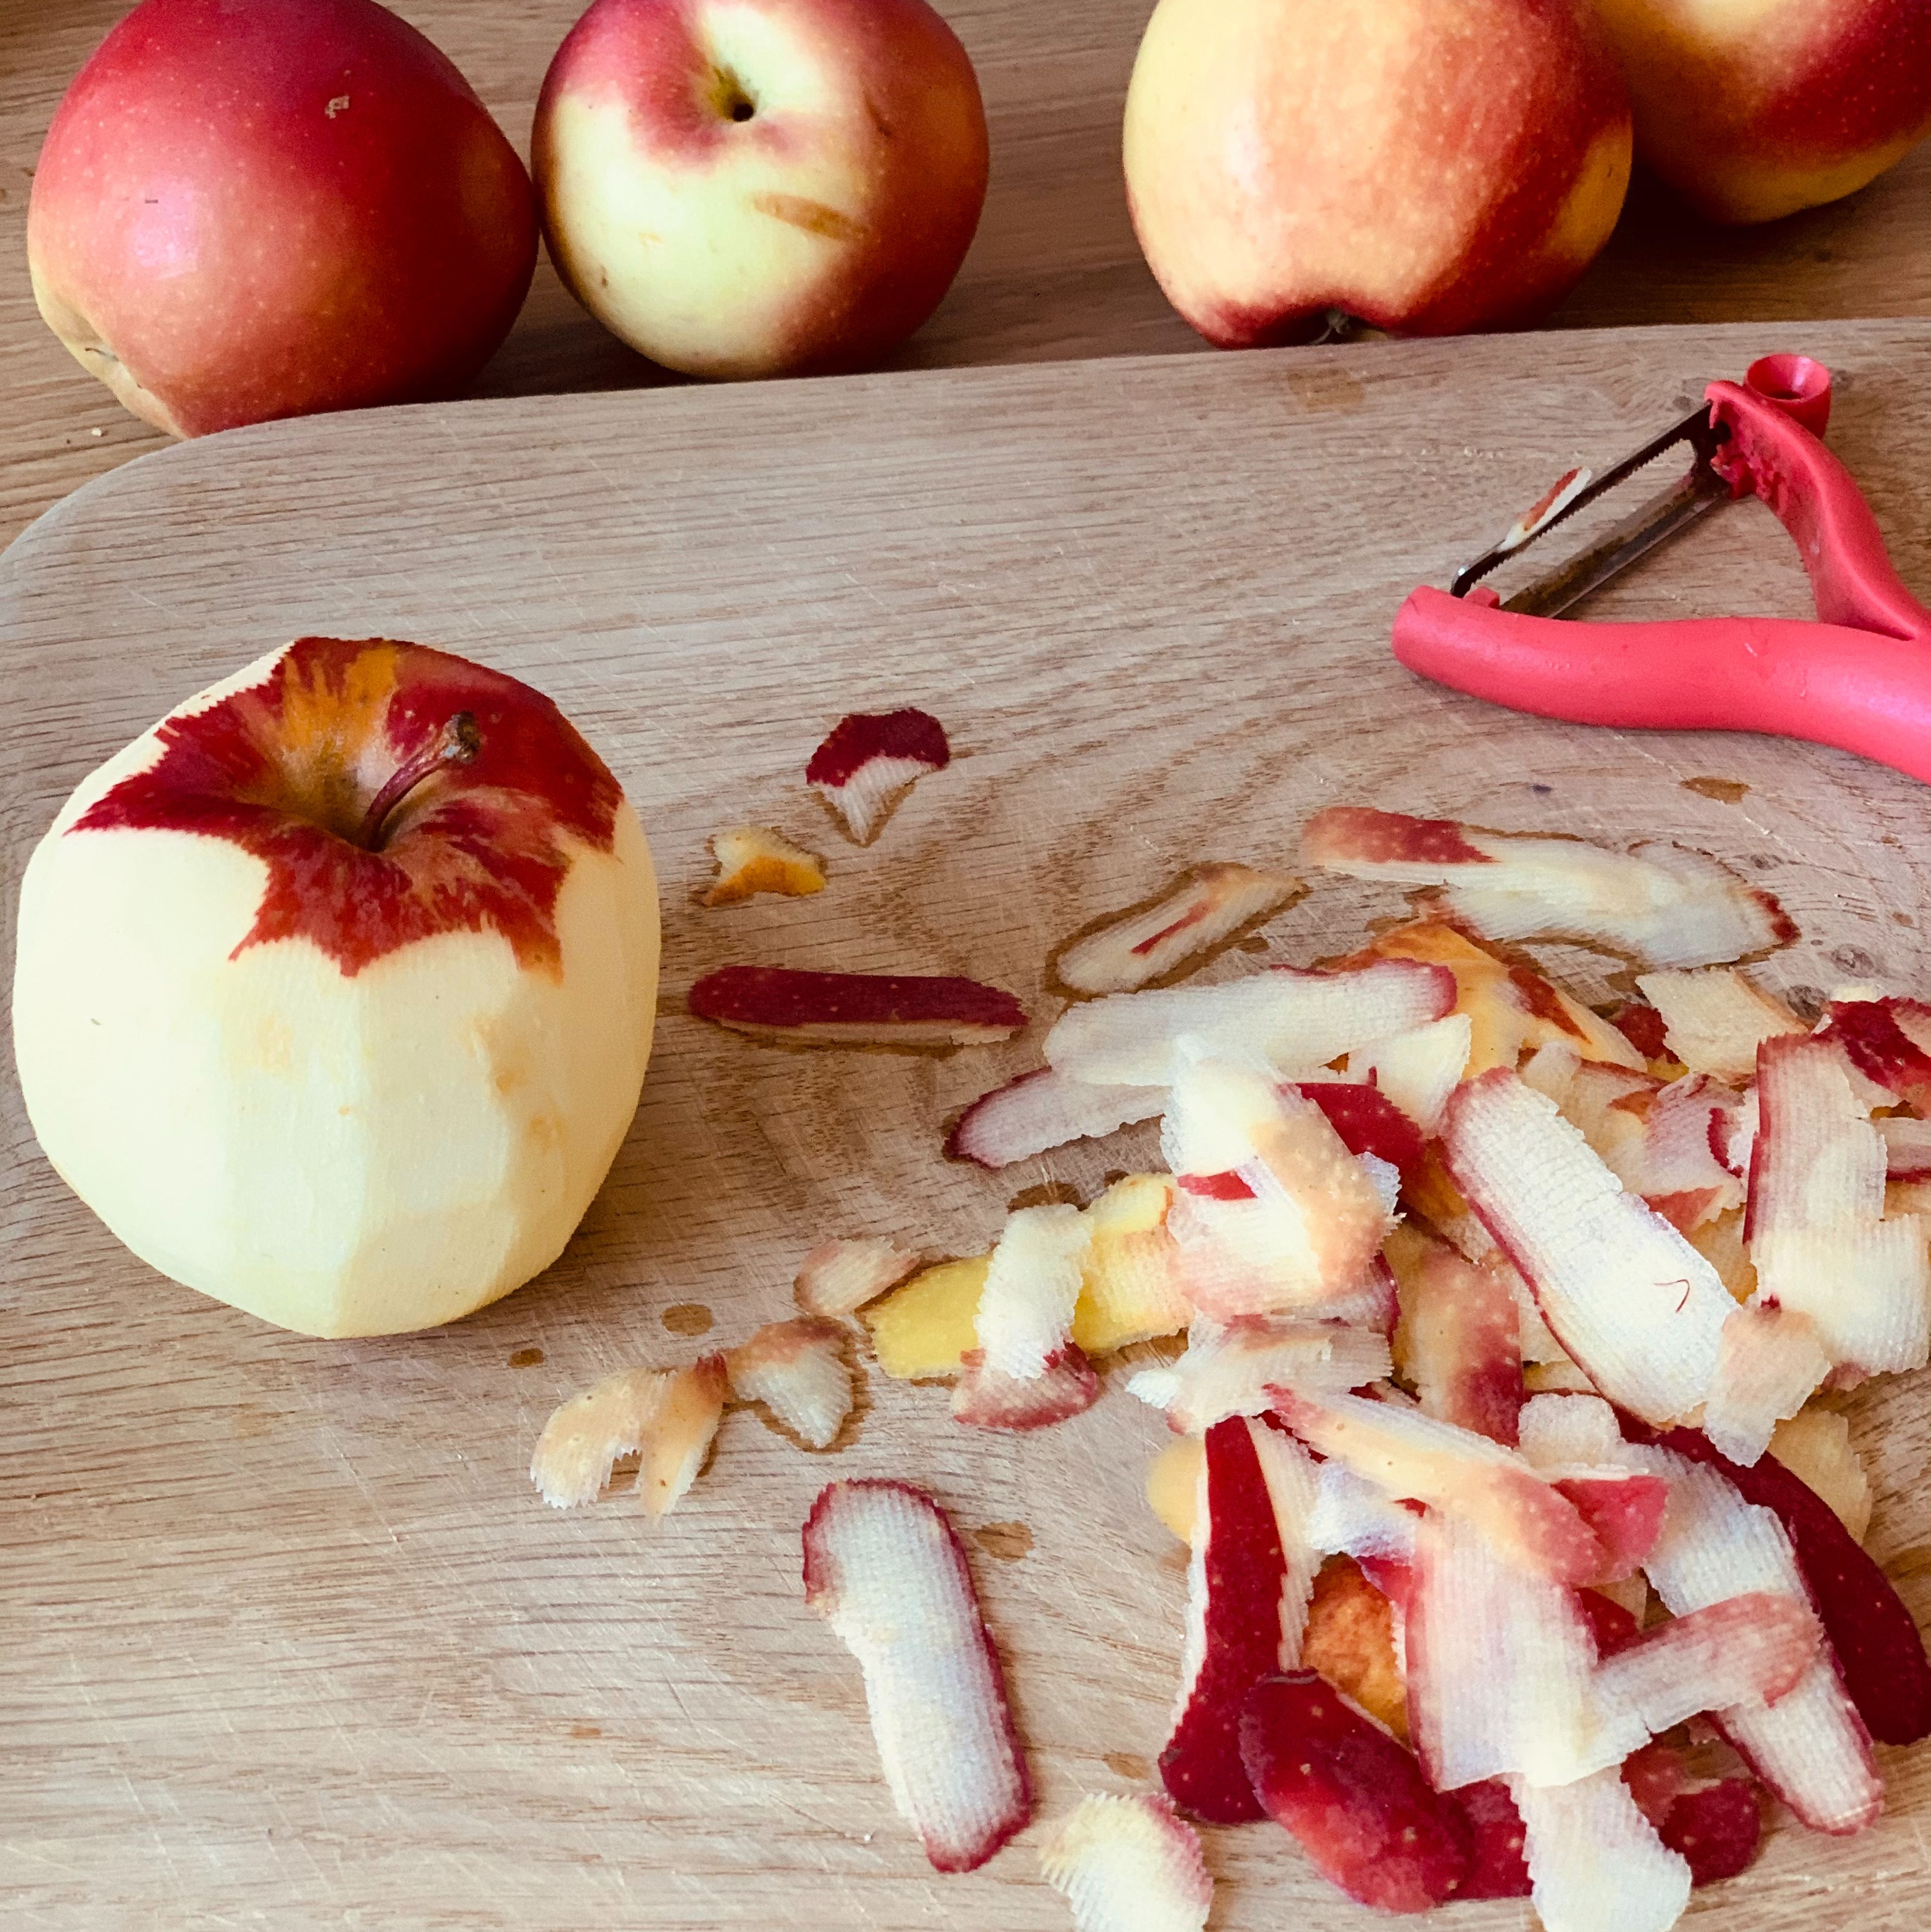 Ofen auf 200 Grad vorheizen. Äpfel schälen, entkernen und in Spalten schneiden.